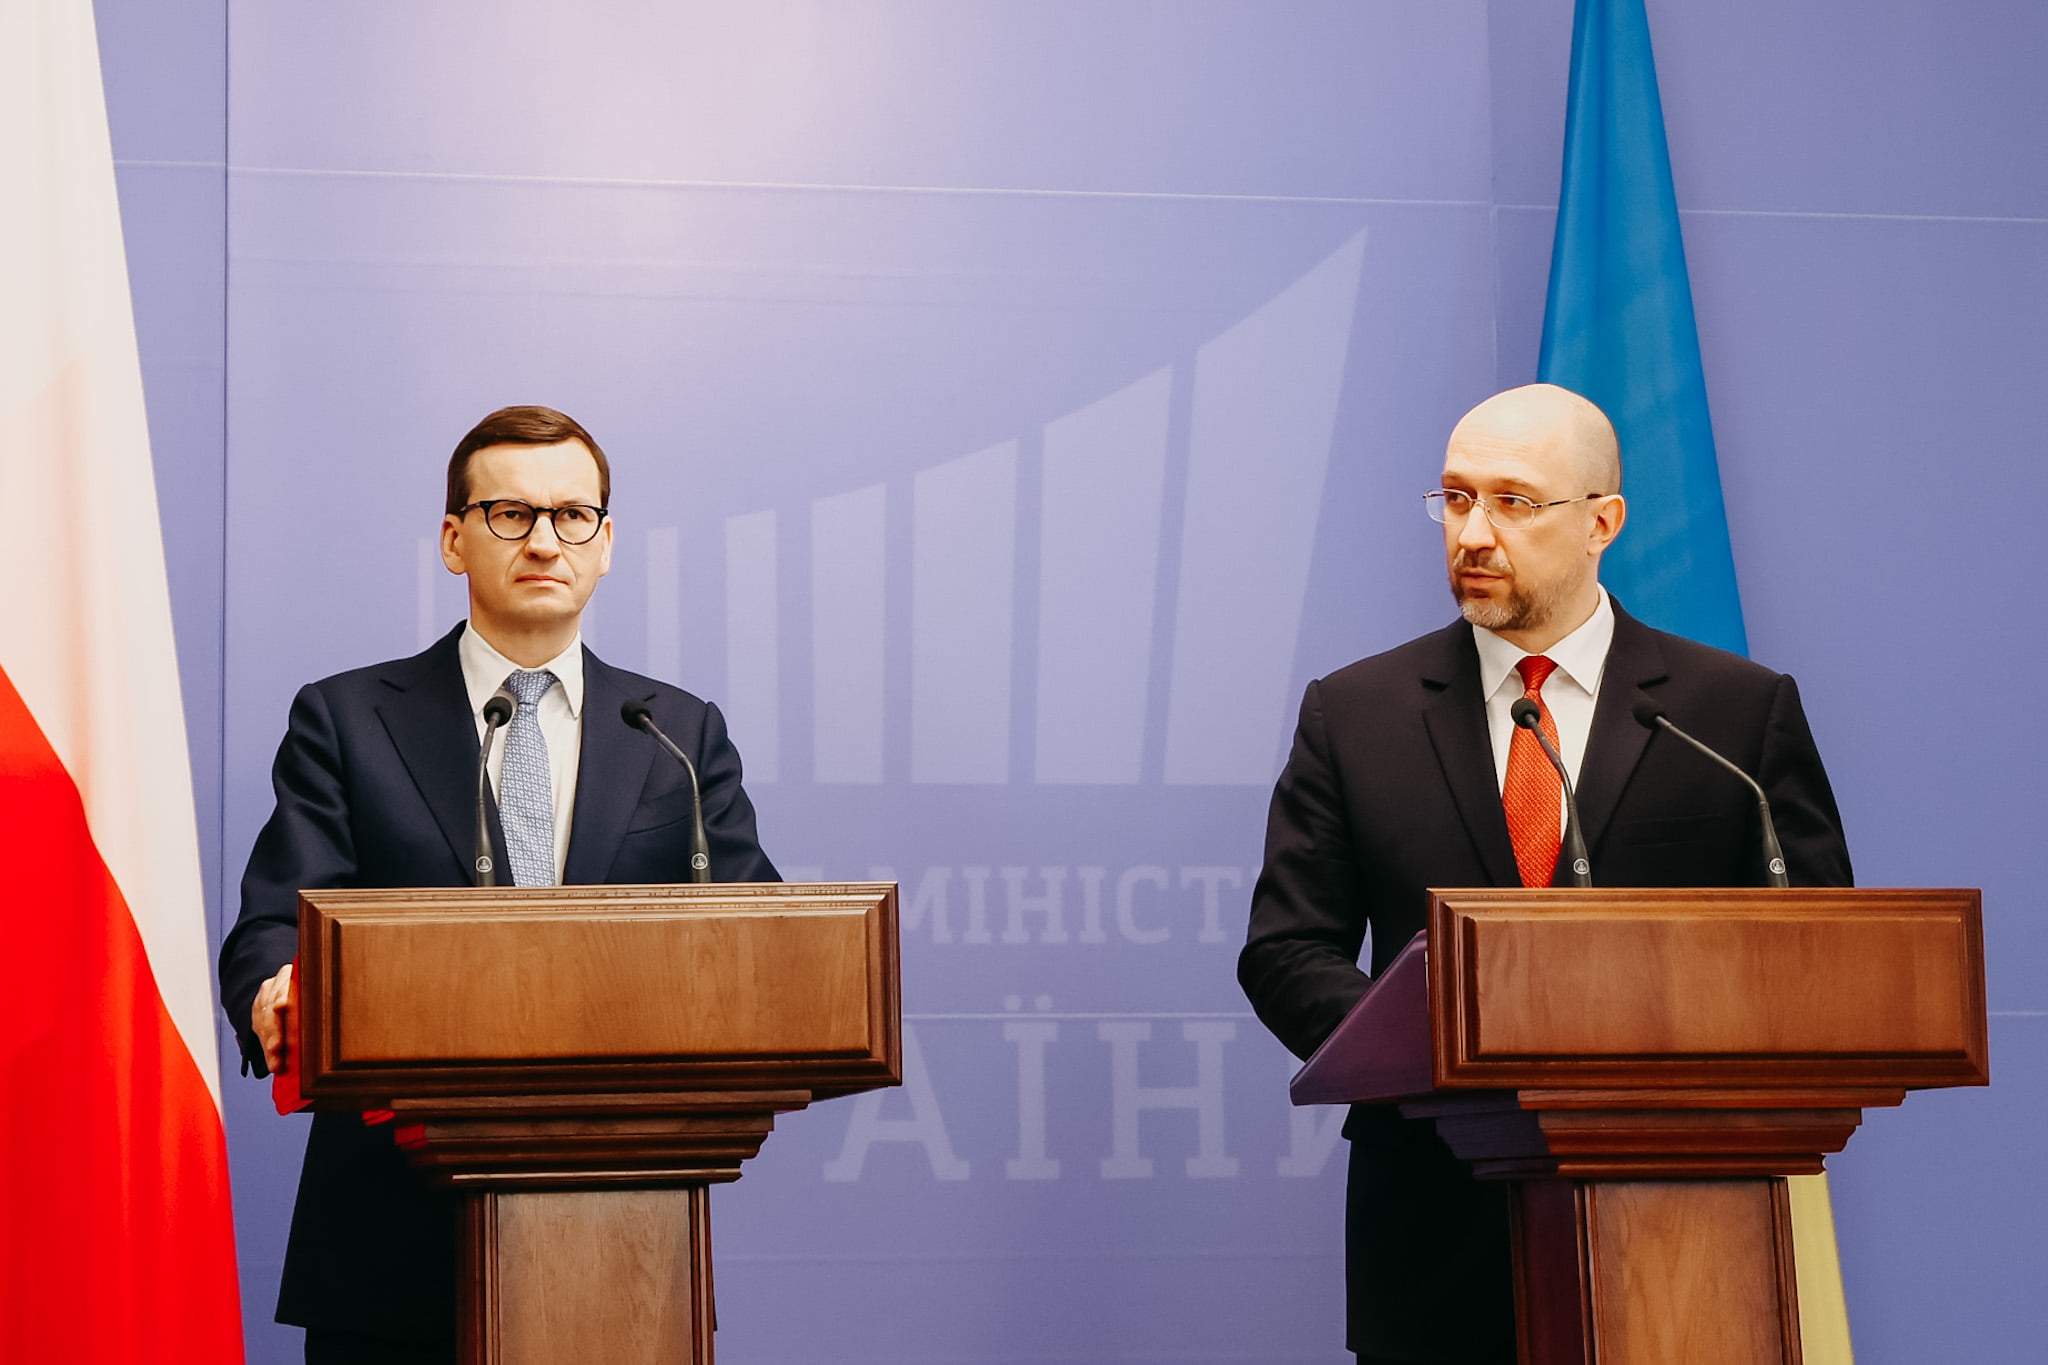 Mateusz Morawiecki lengyel és Denisz Smihal ukrán miniszterelnök tart közös sajtótájékoztatót még február 1-jén.